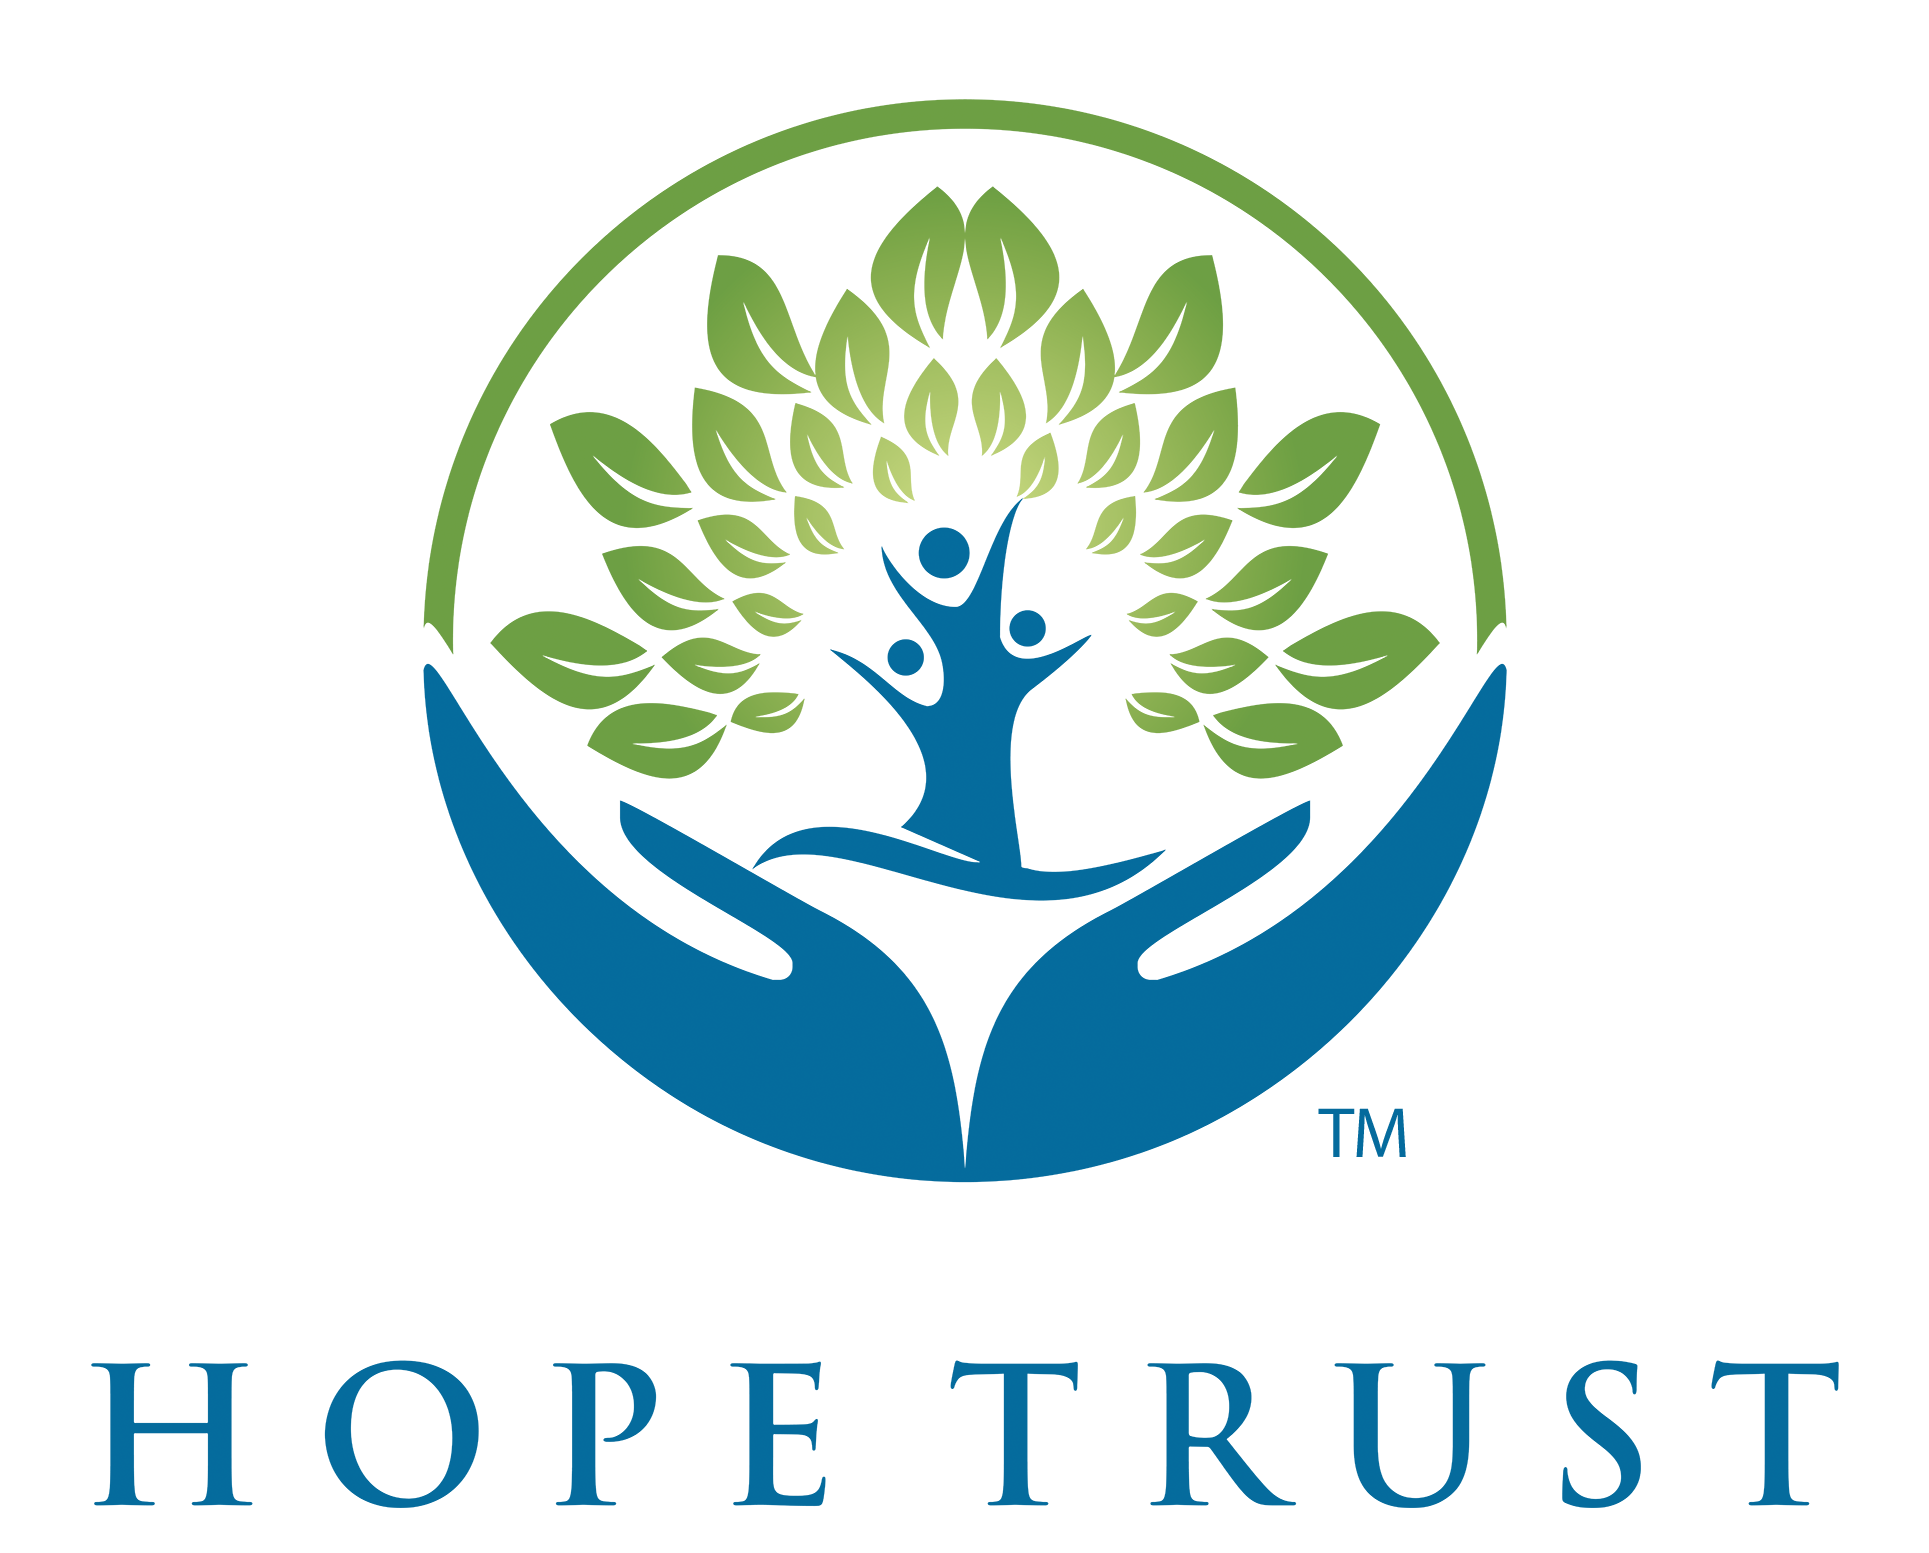 Hope Trust